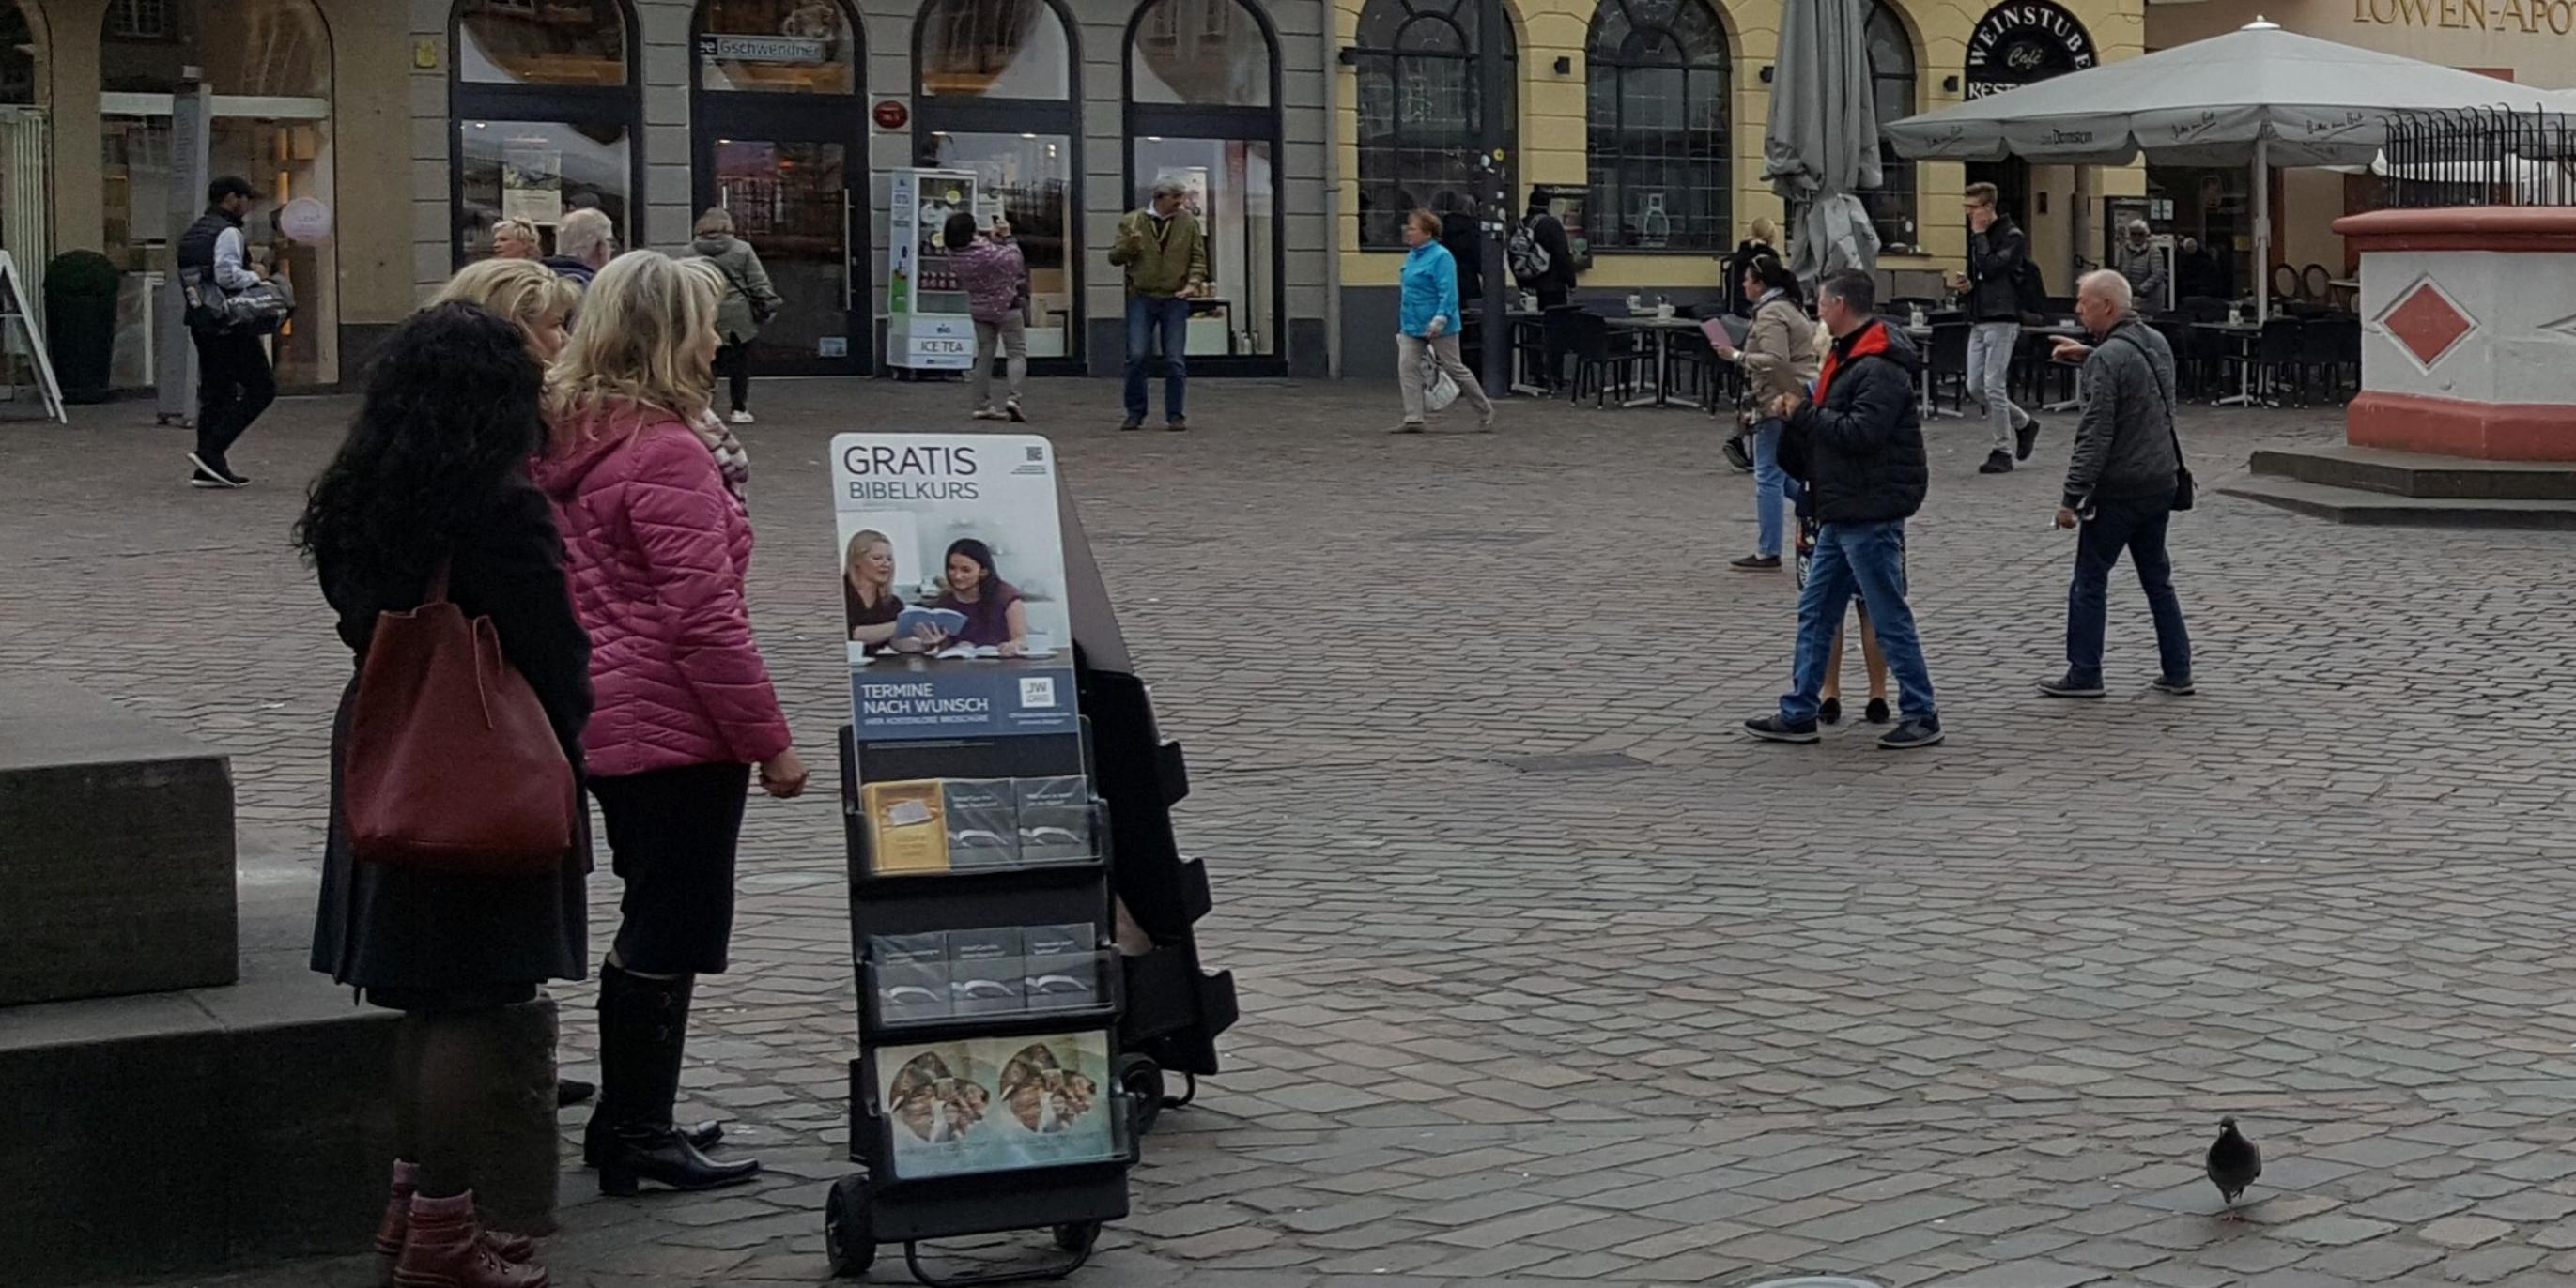 Zeugen Jehovas am Trierer Hauptmarkt